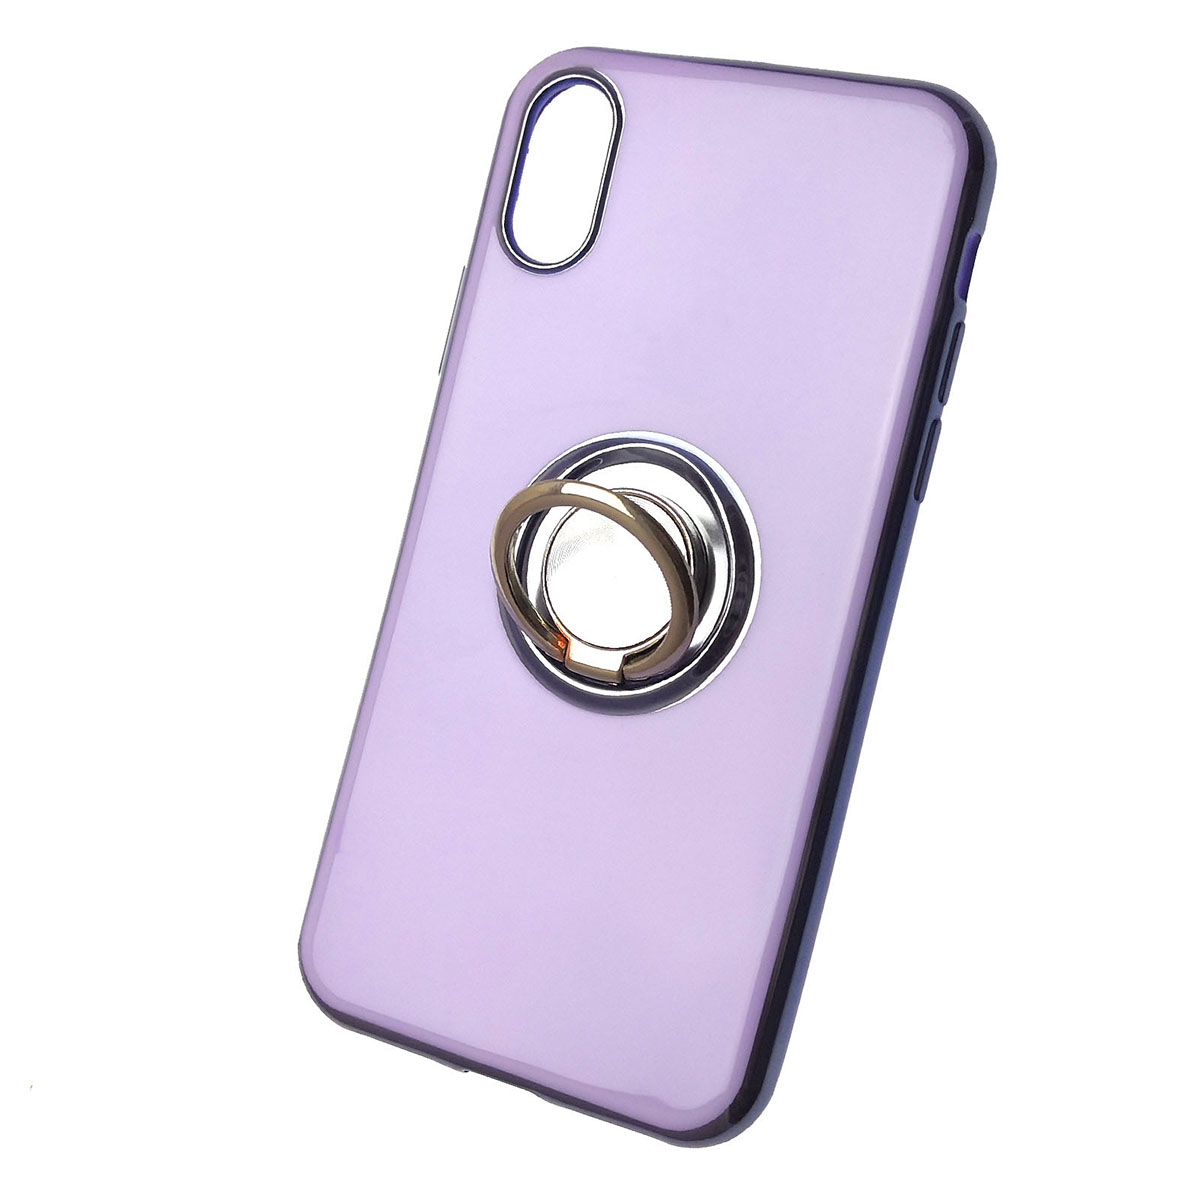 Чехол накладка для APPLE iPhone X, XS, силикон, глянец, с логотипом, кольцо держатель, цвет светло фиолетовый.